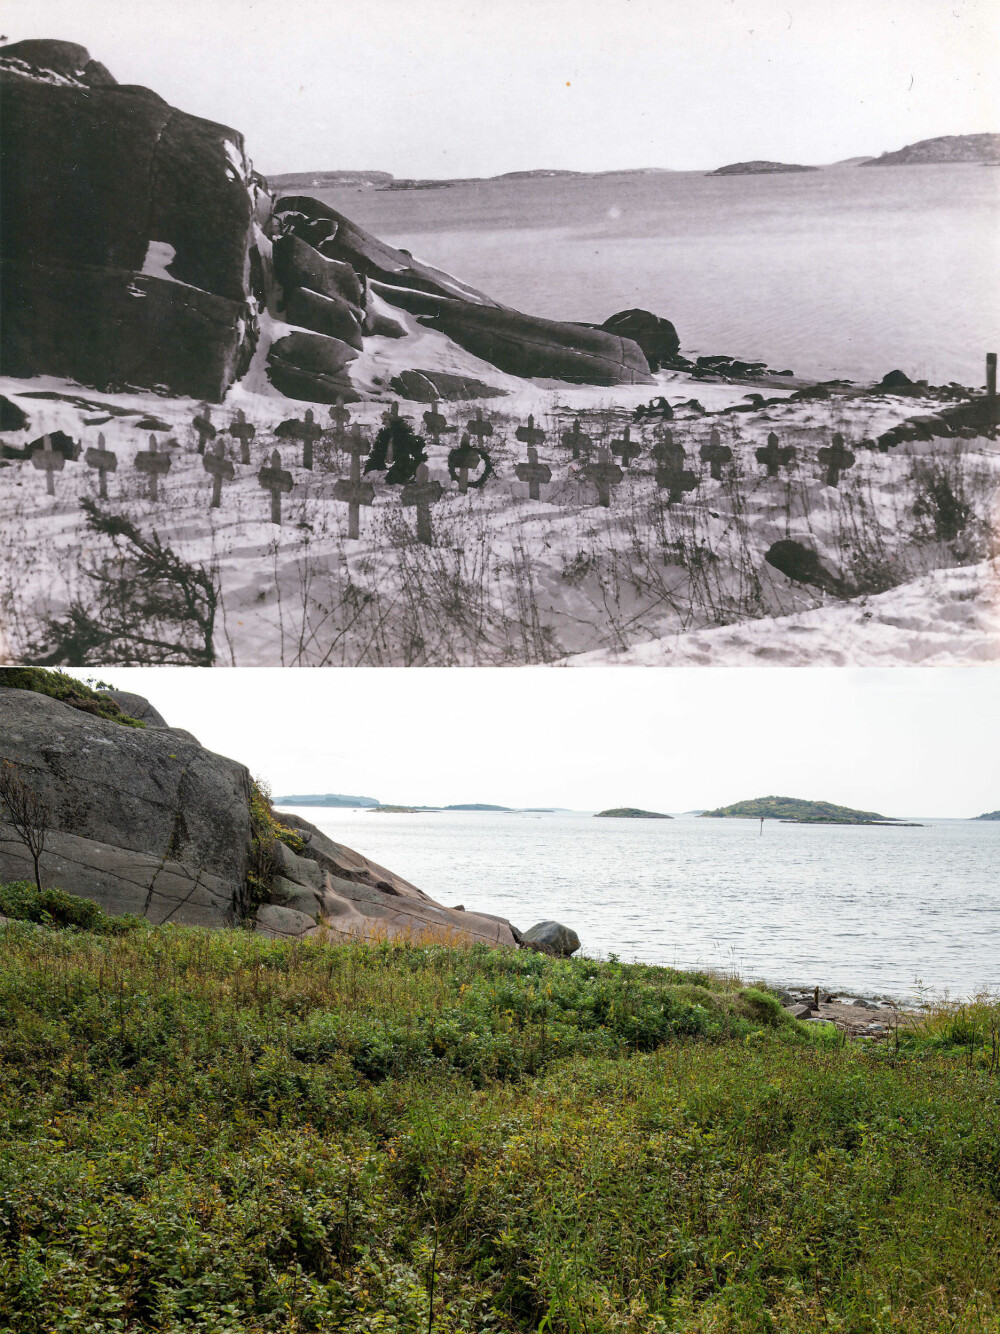 GRAVPLASS: Gravplassen på sydsiden av øya inneholdt 28 fangegraver som ble flyttet i 1953. I dag er området en strandidyll.